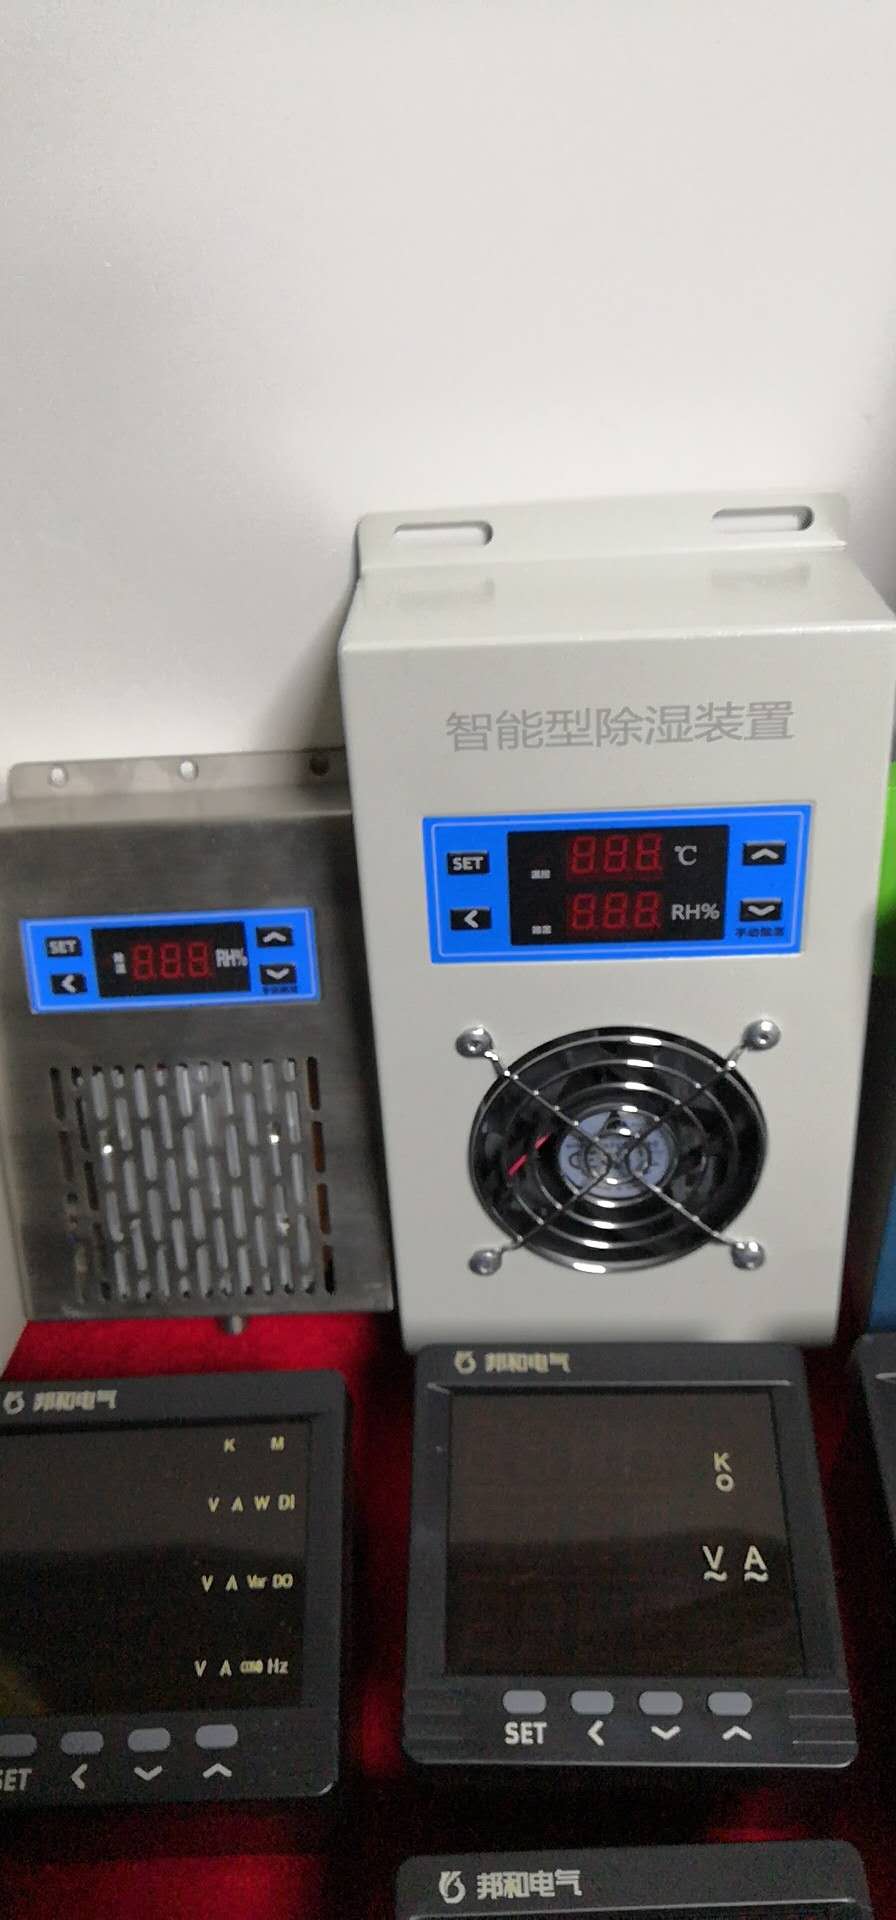 温湿度控制器BC703-F100-088